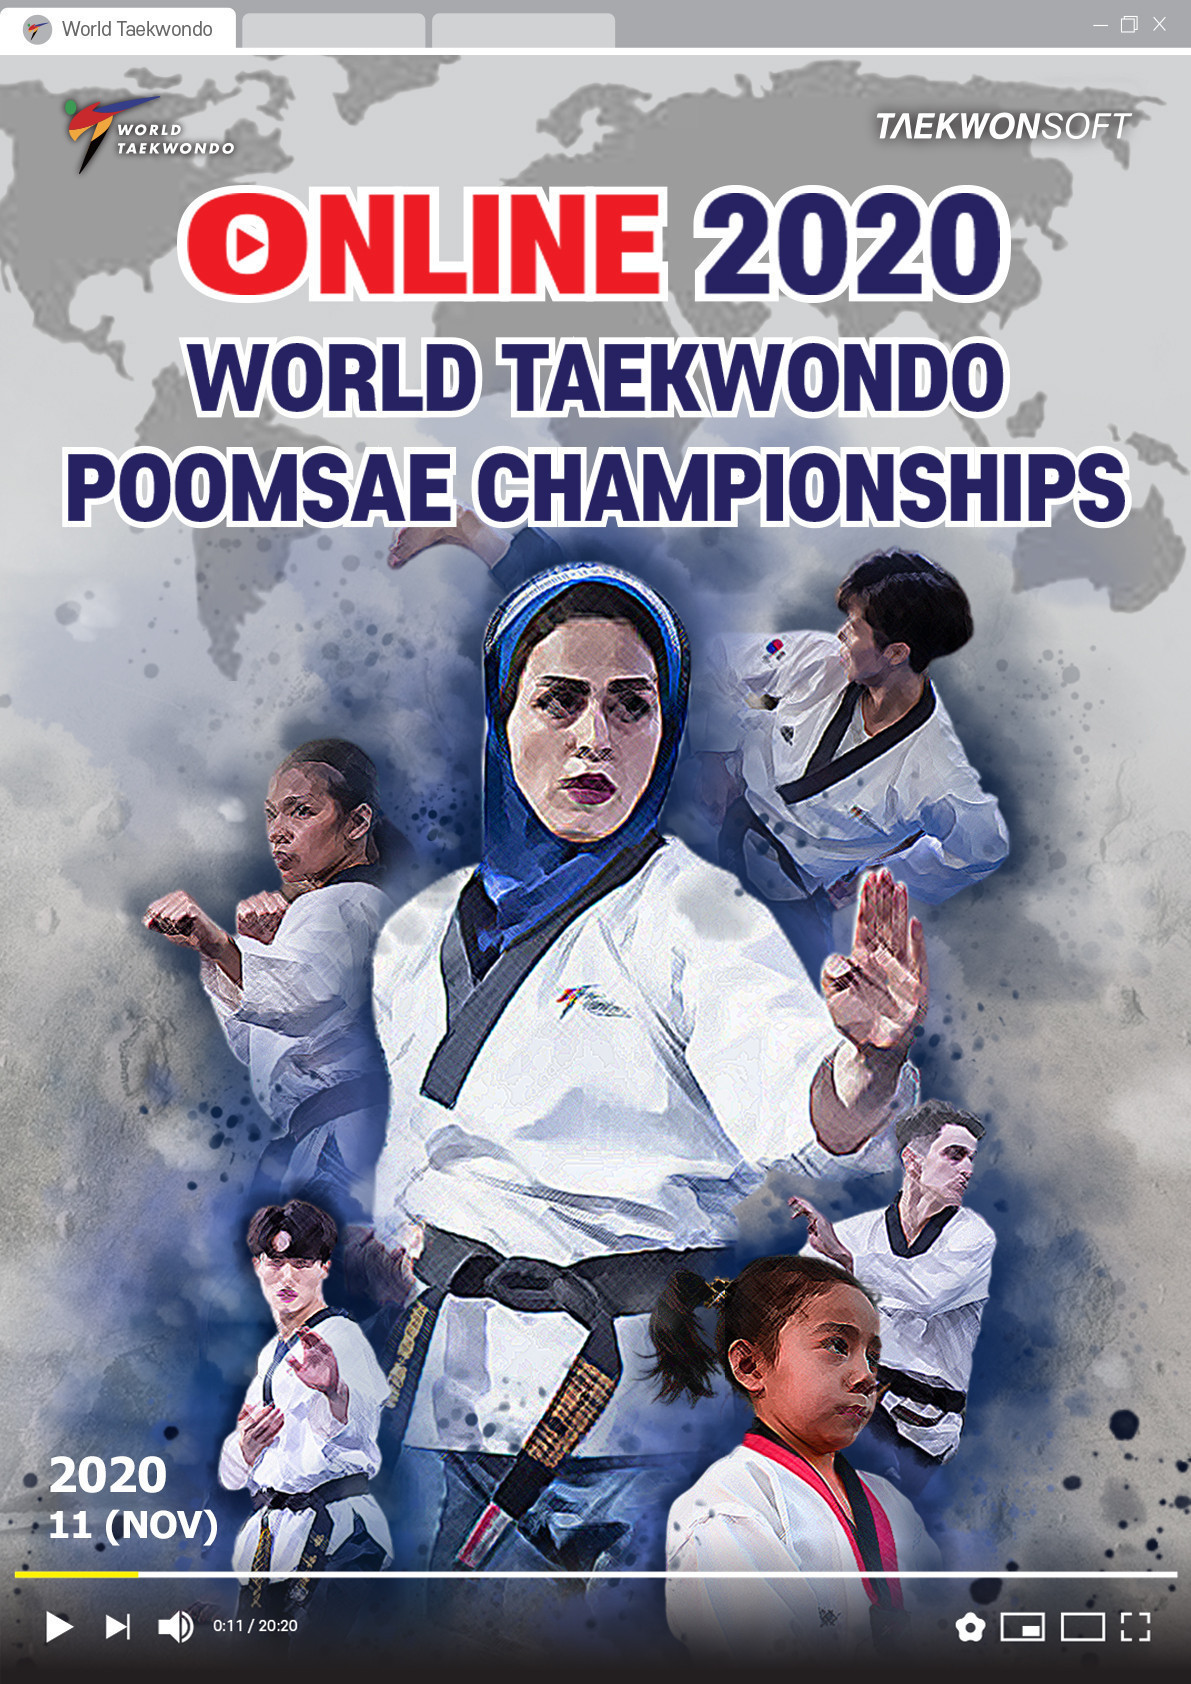 The Online World Taekwondo Poomsae Championships are underway ©World Taekwondo